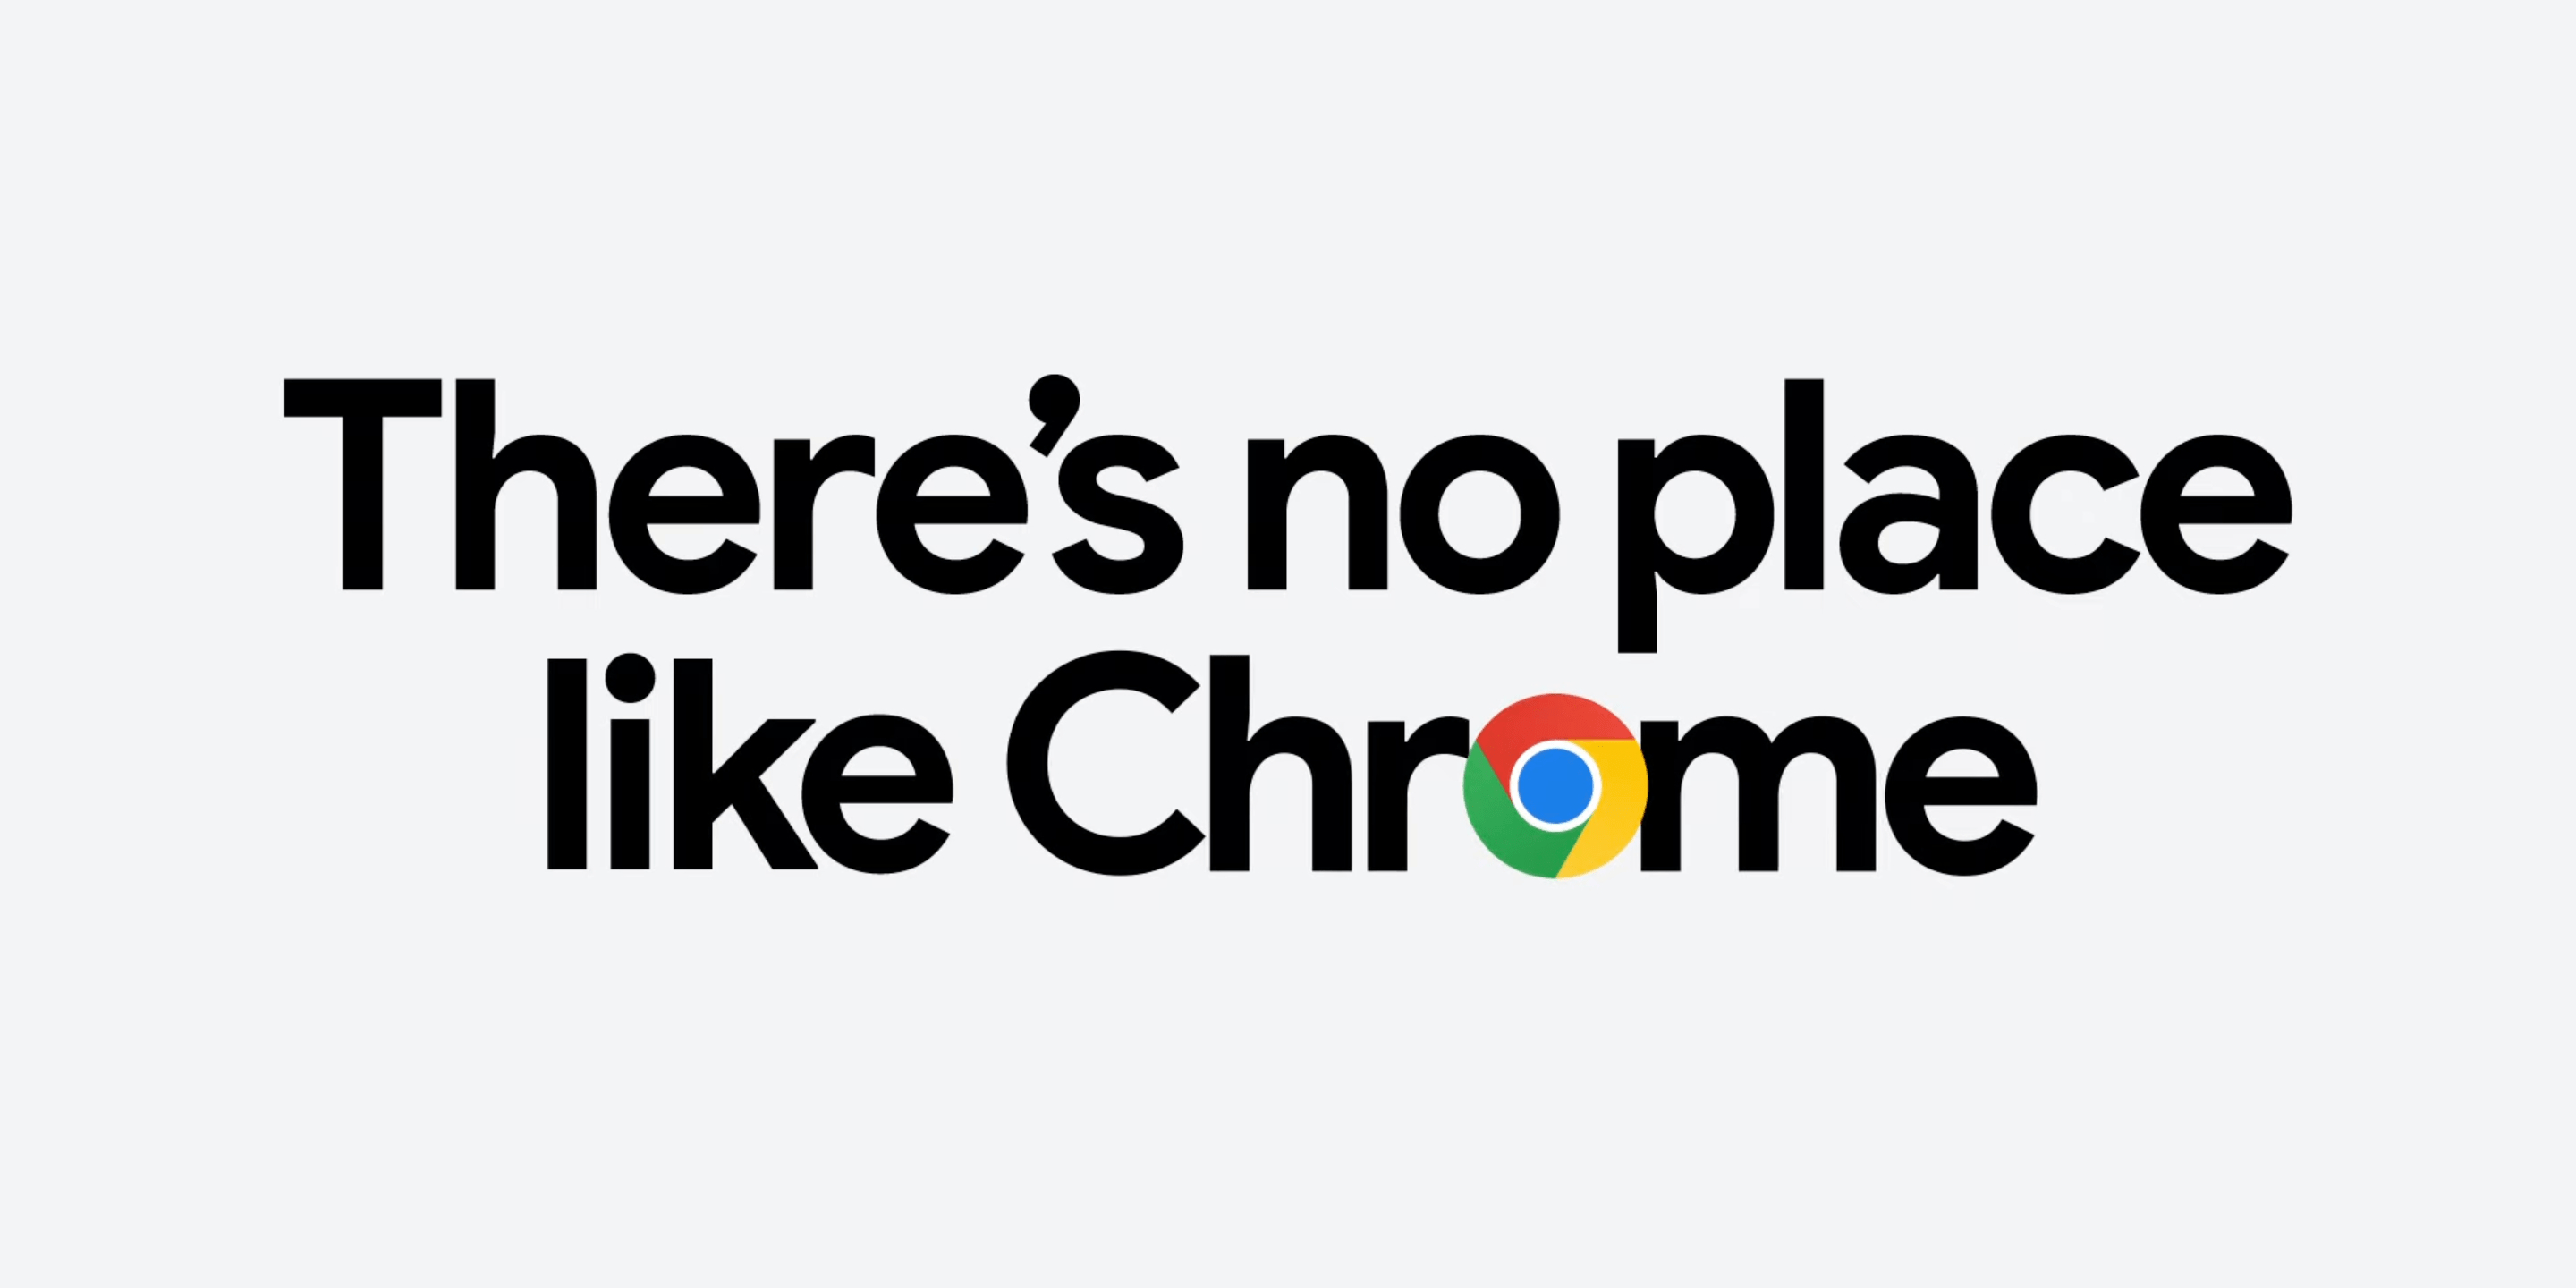 Hasło "There's no place like Chrome"